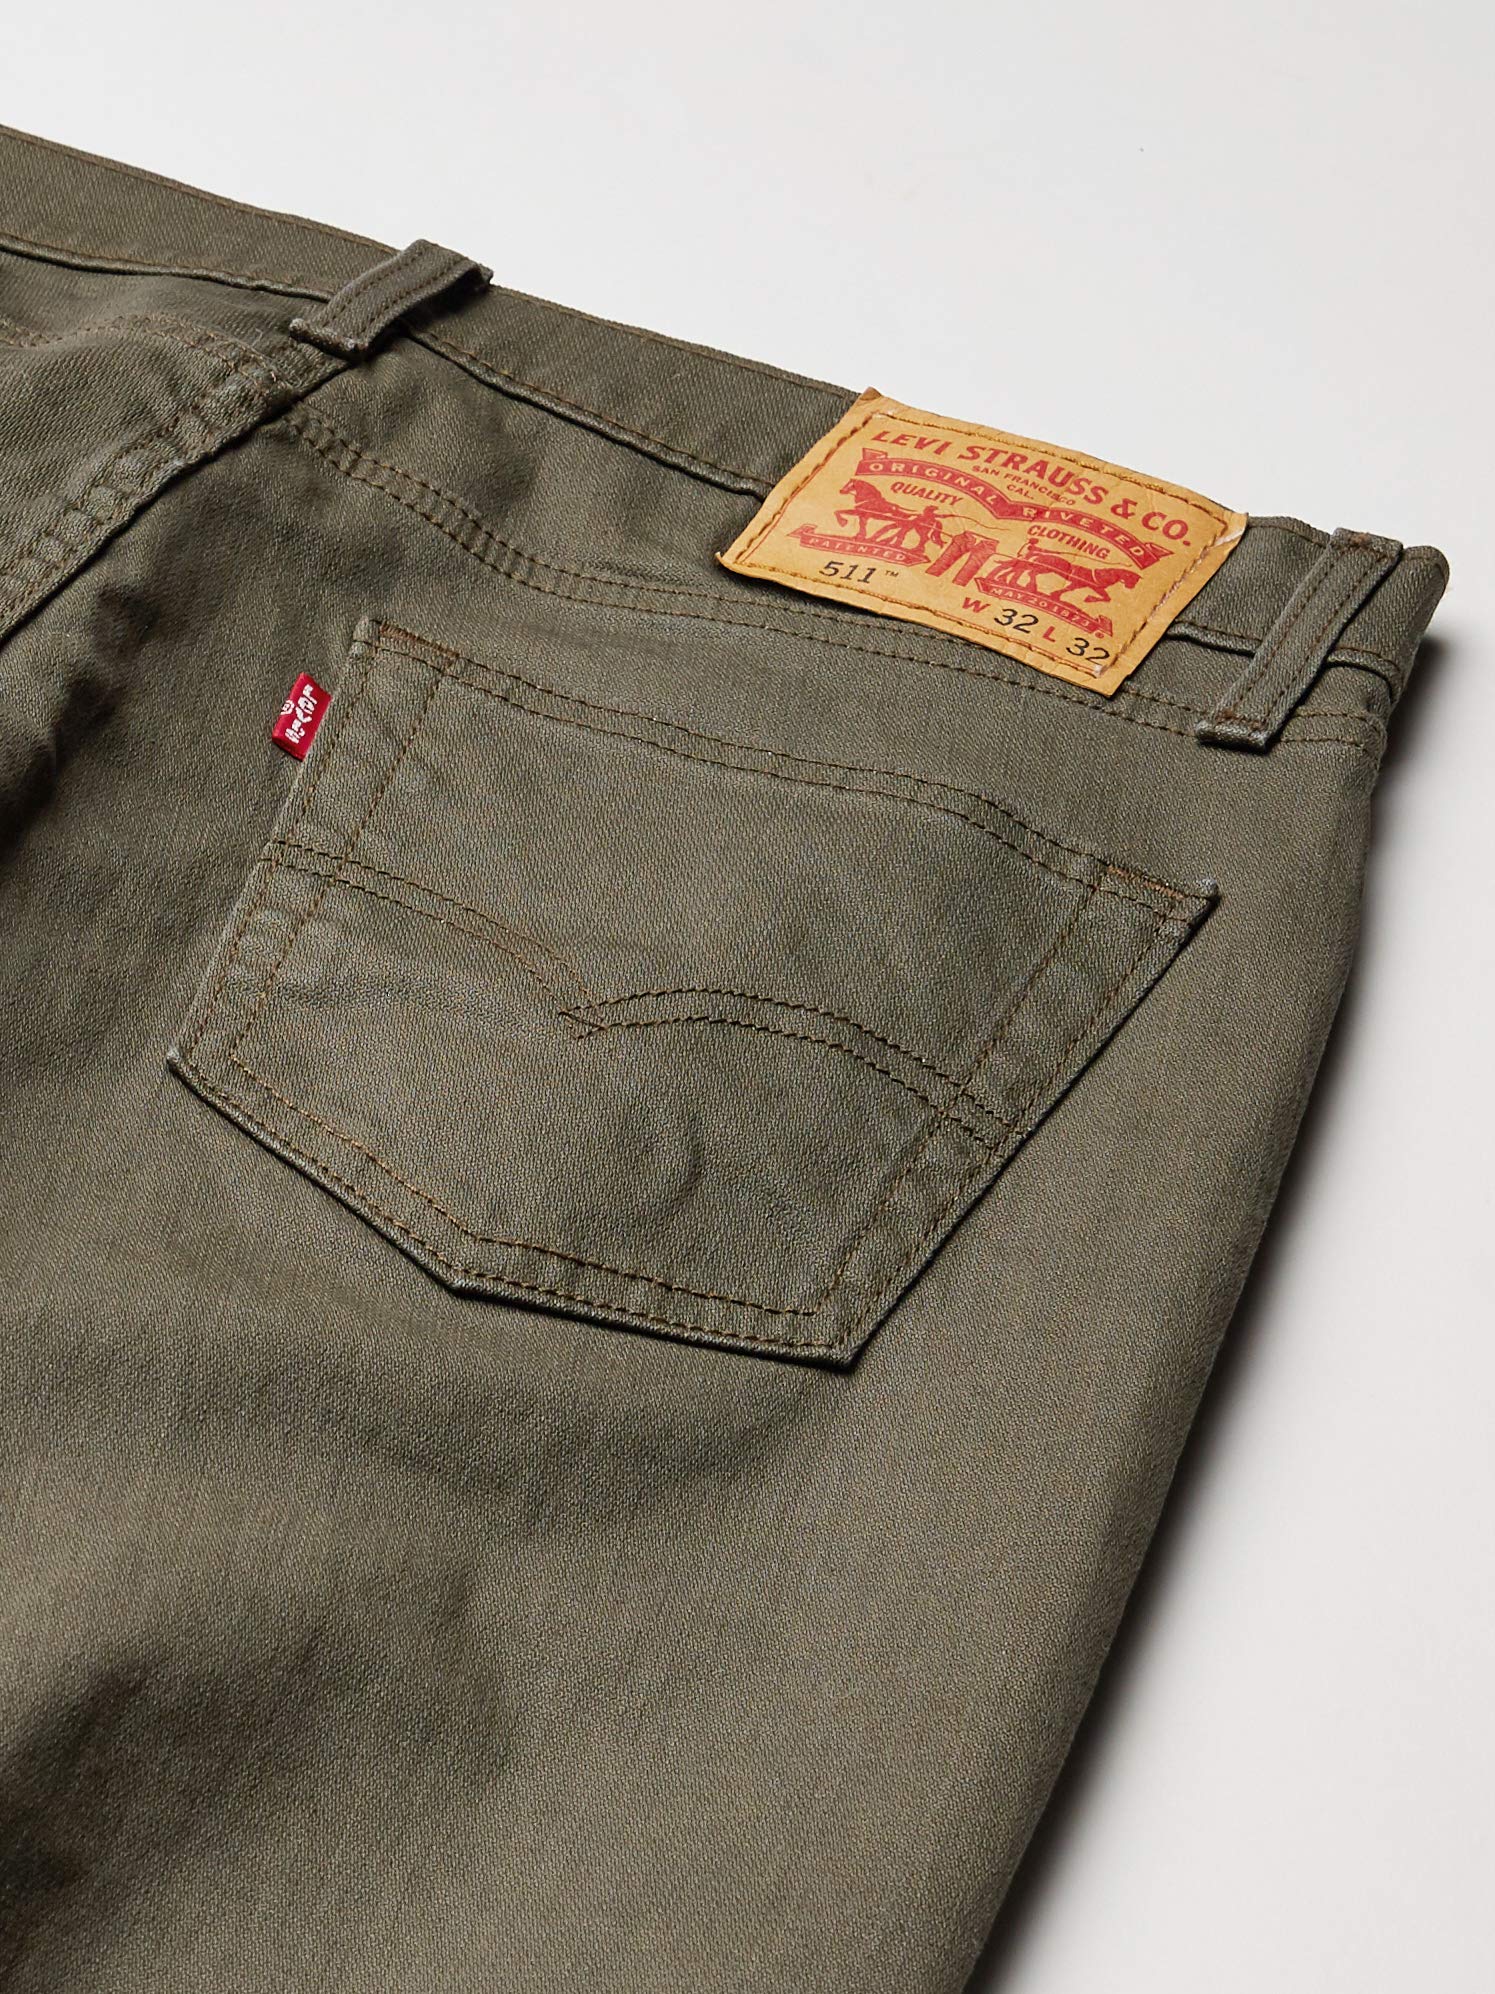 Mua Levi's Men's 511 Slim Fit Stretch Jeans trên Amazon Mỹ chính hãng 2023  | Giaonhan247